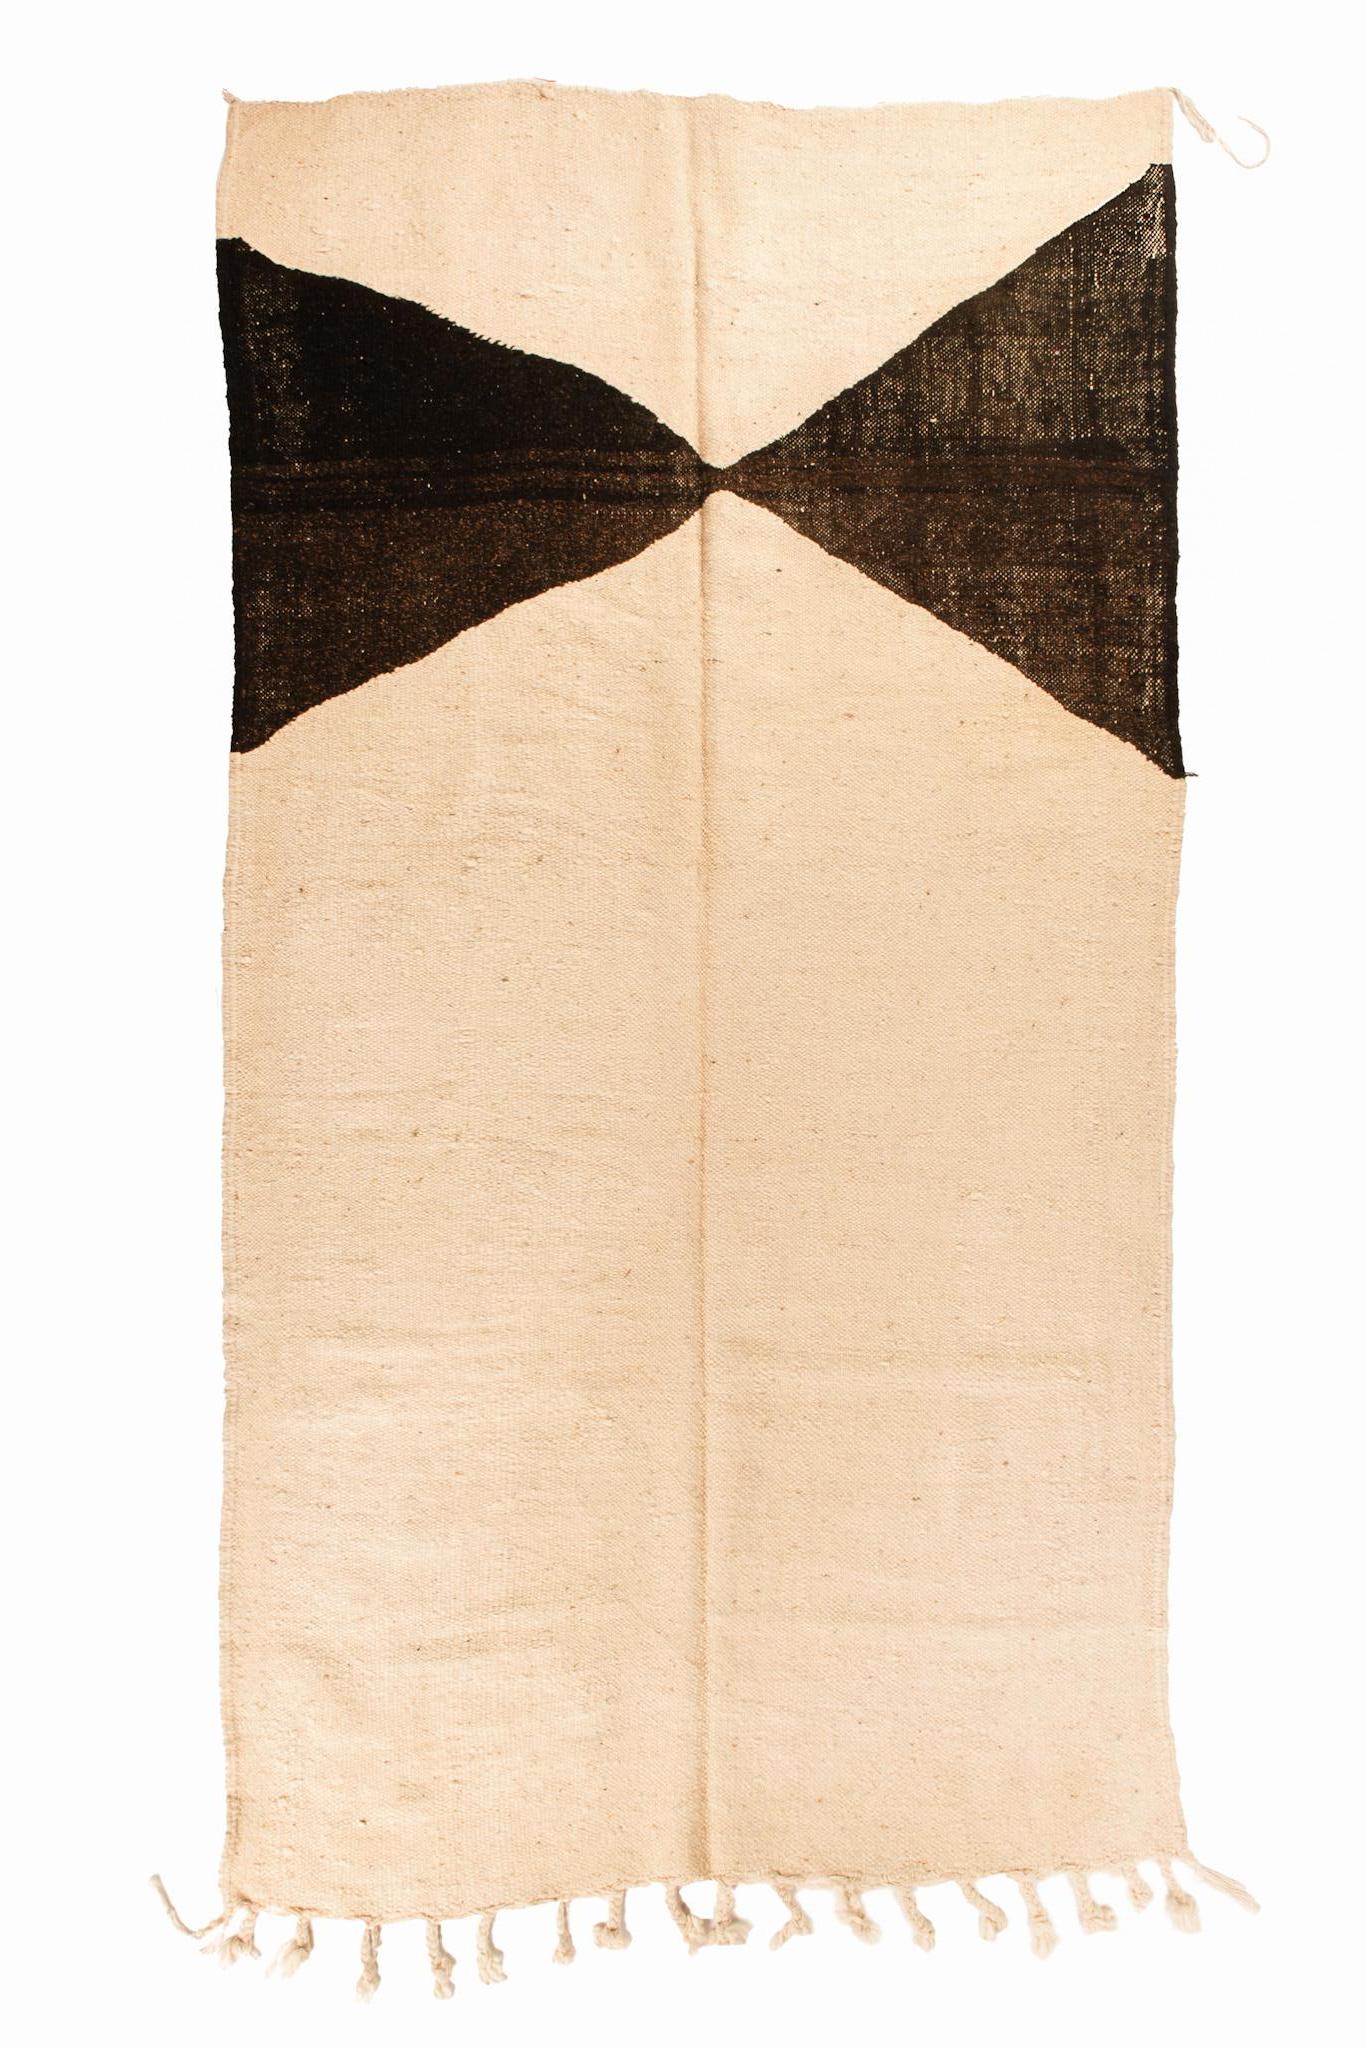 Notre collection Flat Weave est un tapis marocain traditionnel sans poils. Tous les tapis sont fabriqués à partir de 100 % de laine de mouton de la plus haute qualité. Les patchs sont inspirés par les formes, les lignes et les textures d'un Maroc